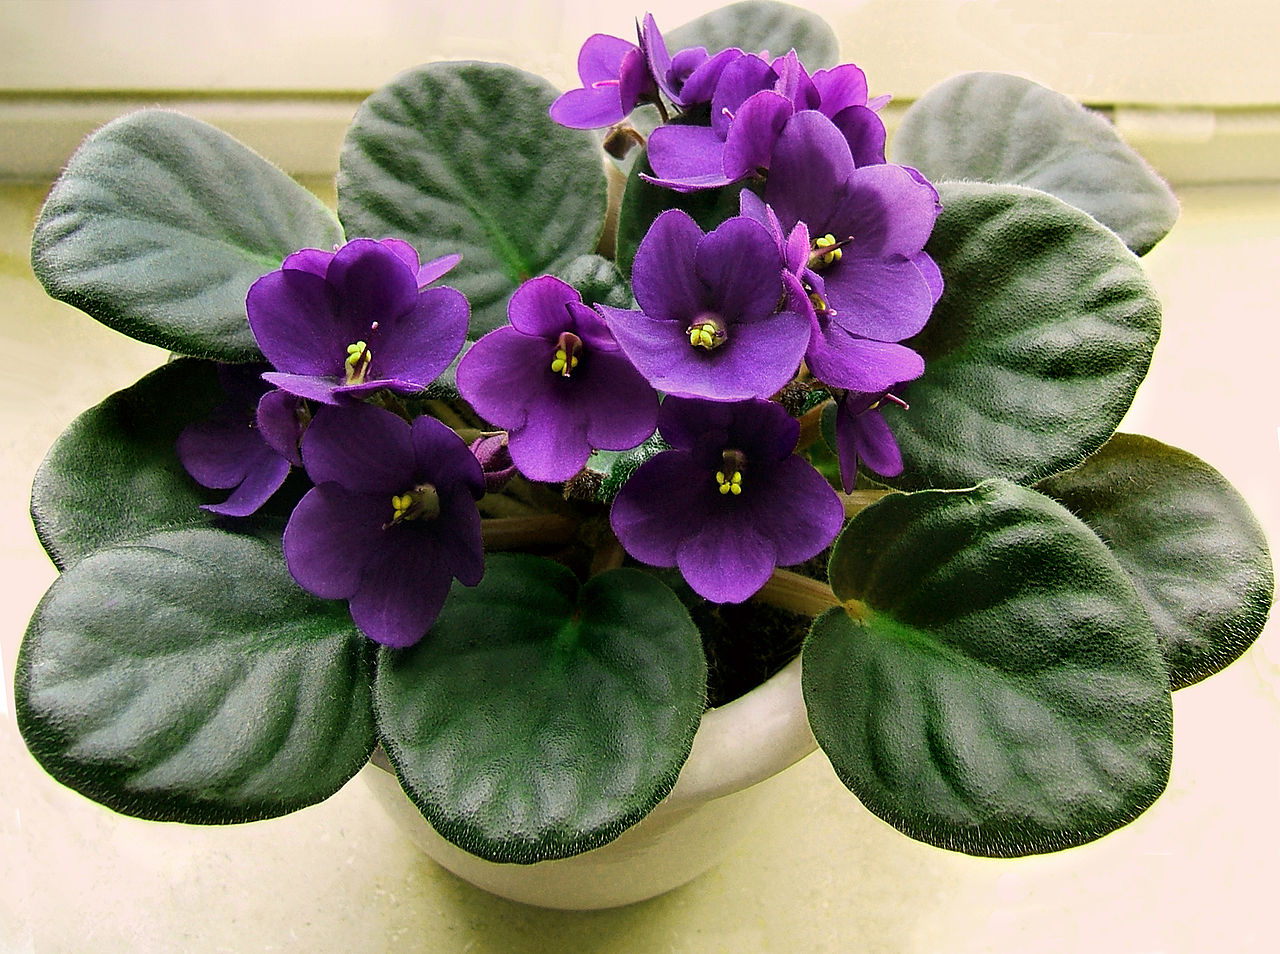 La violeta africana es una planta pequeña que produce flores bonitas